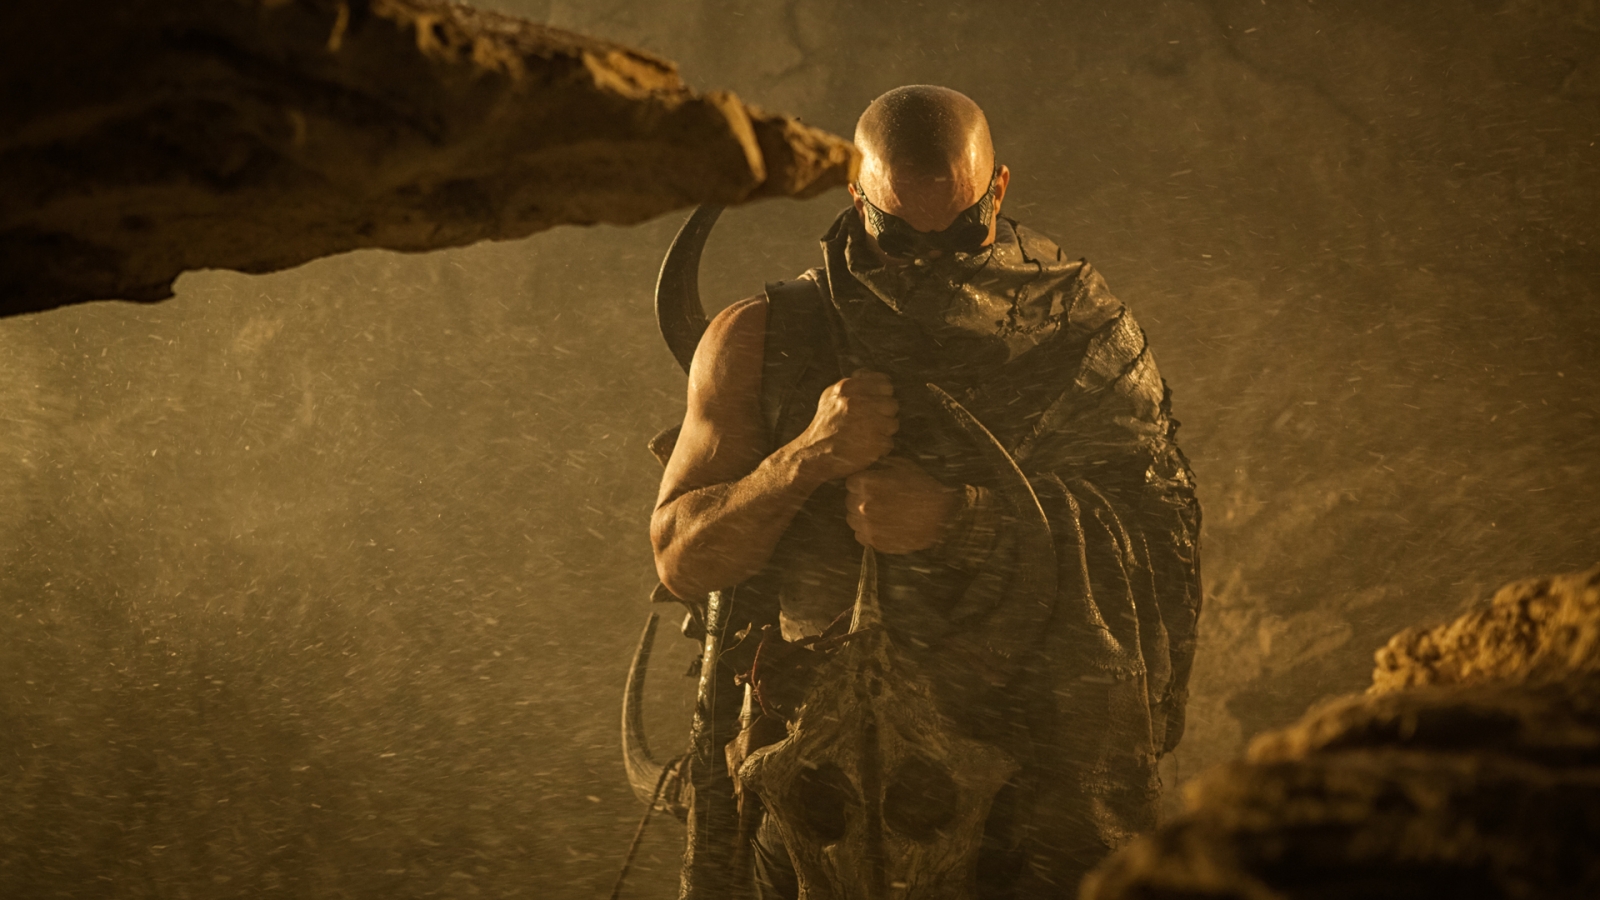 Vin Diesel Riddick 2013 for 1600 x 900 HDTV resolution